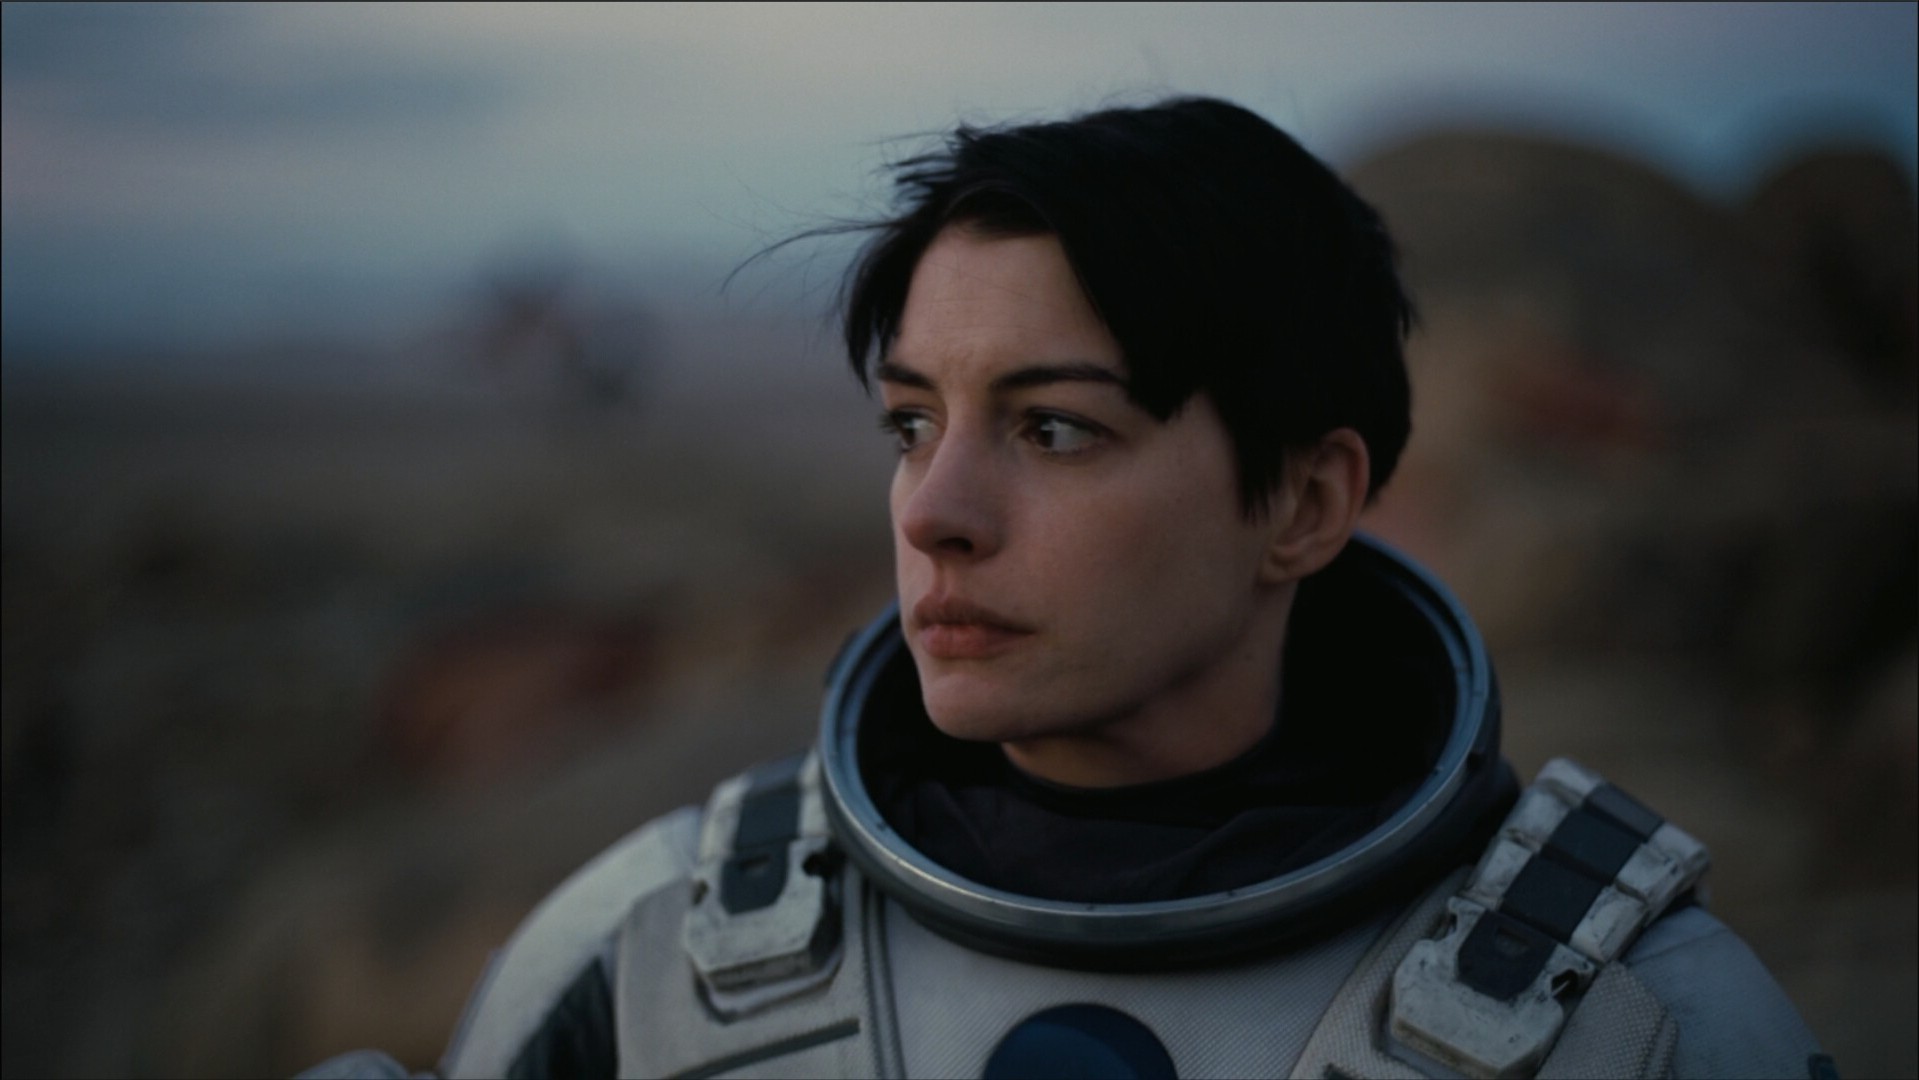 359233-Anne_Hathaway-actress-Interstellar_movie-spacesuit.jpg